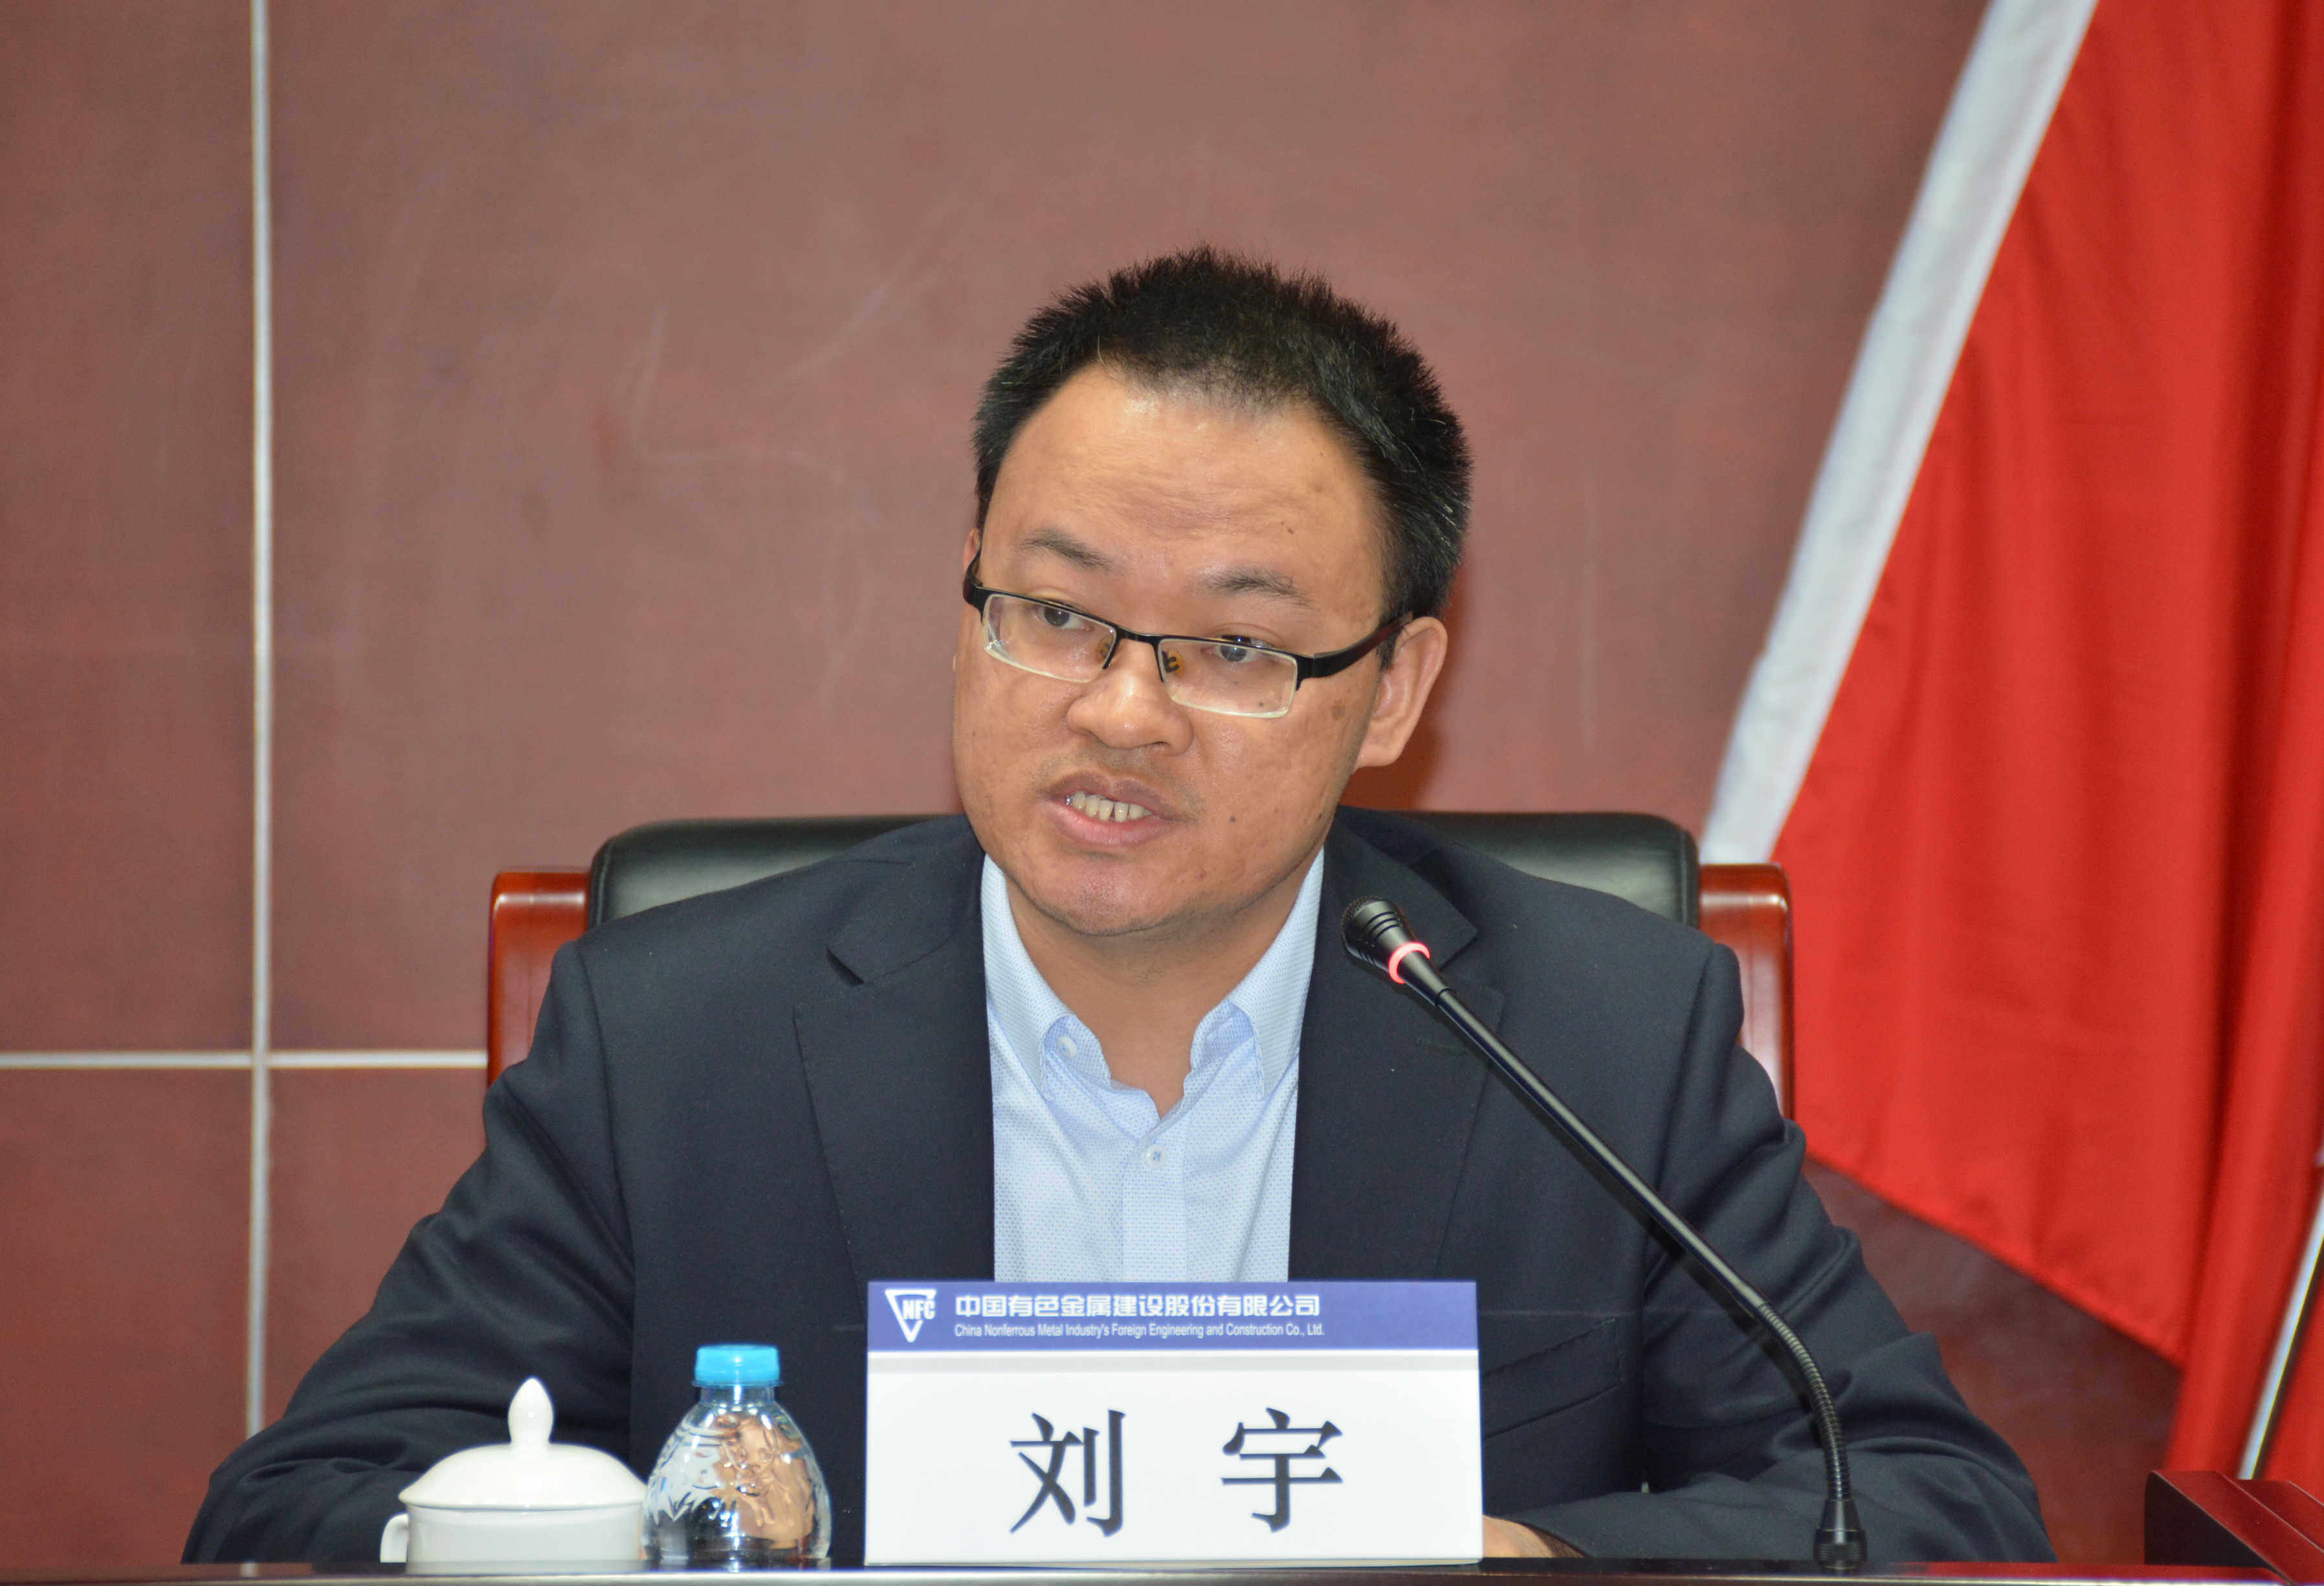 刘宇财务总监作经营运行分析报告